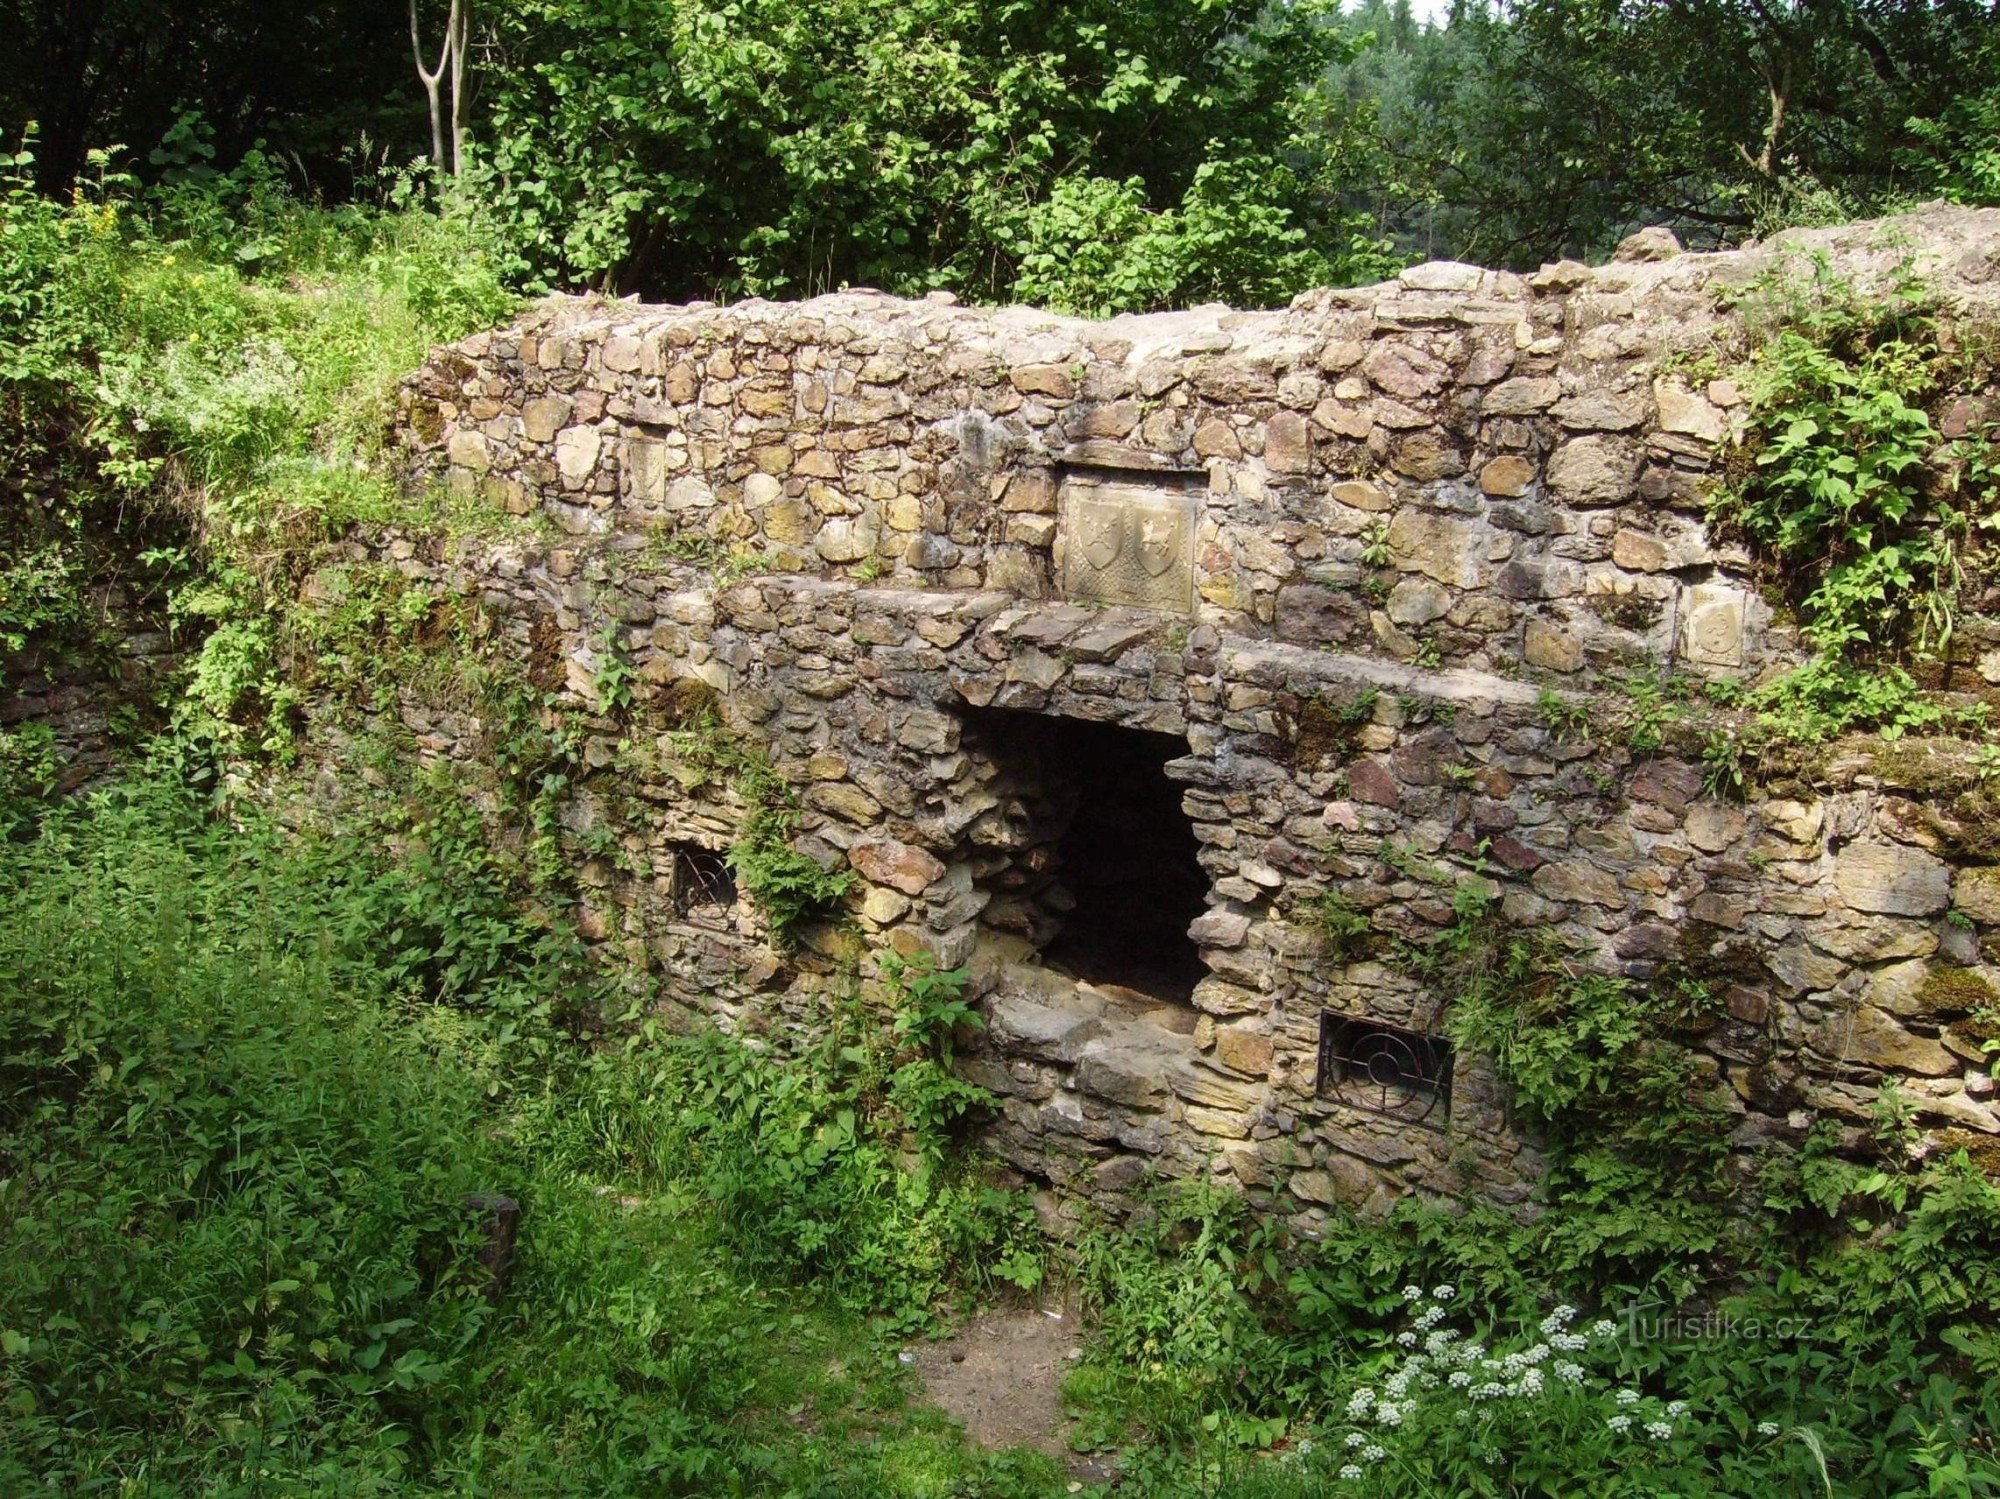 de ruïnes van Ronovec